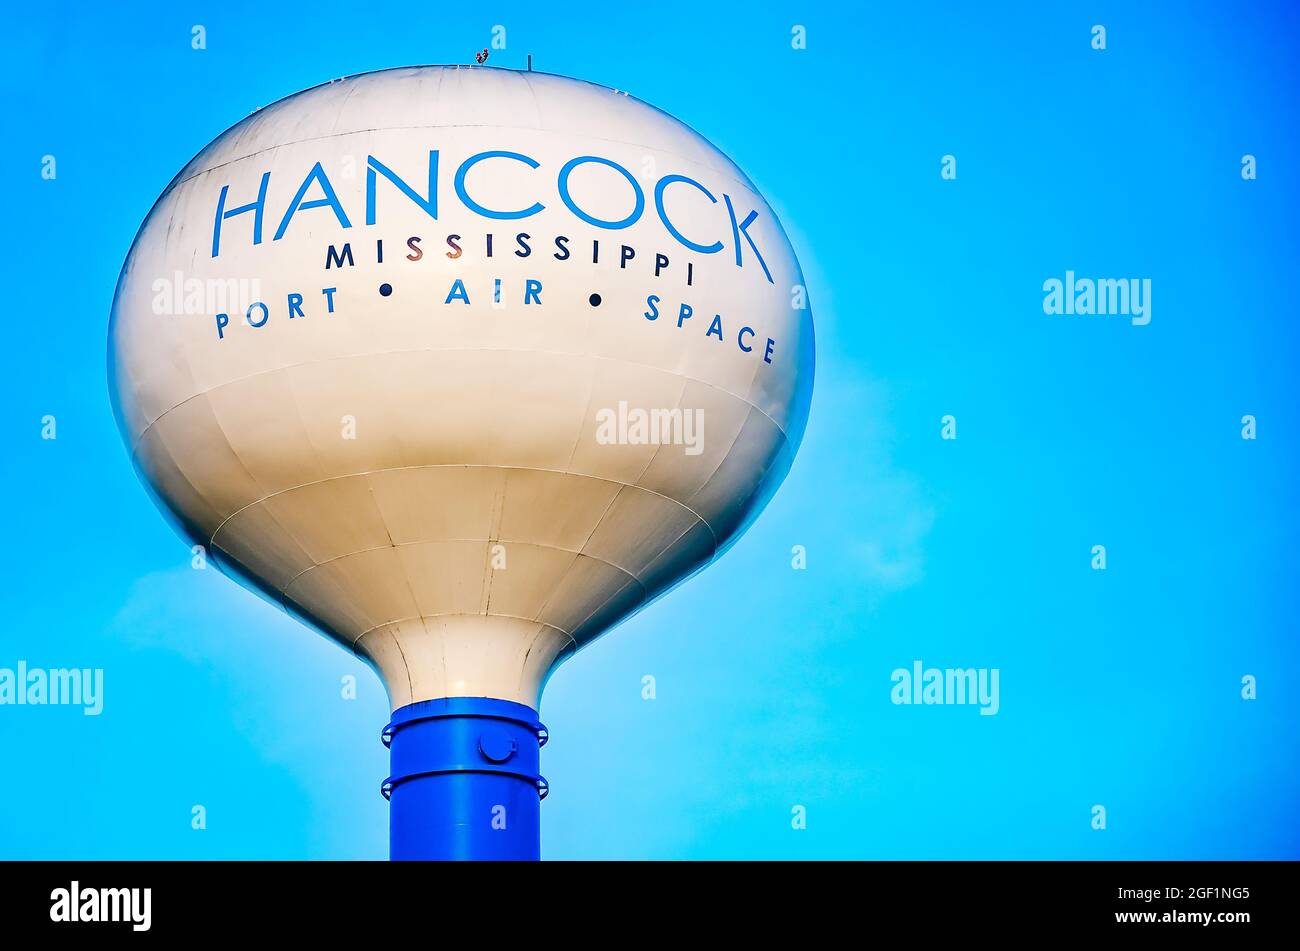 Una torre dell’acqua mette in evidenza le iniziative di sviluppo economico della contea di Hancock nel settore portuale, aereo e spaziale, 21 agosto 2021, A Kiln, Mississippi. Foto Stock